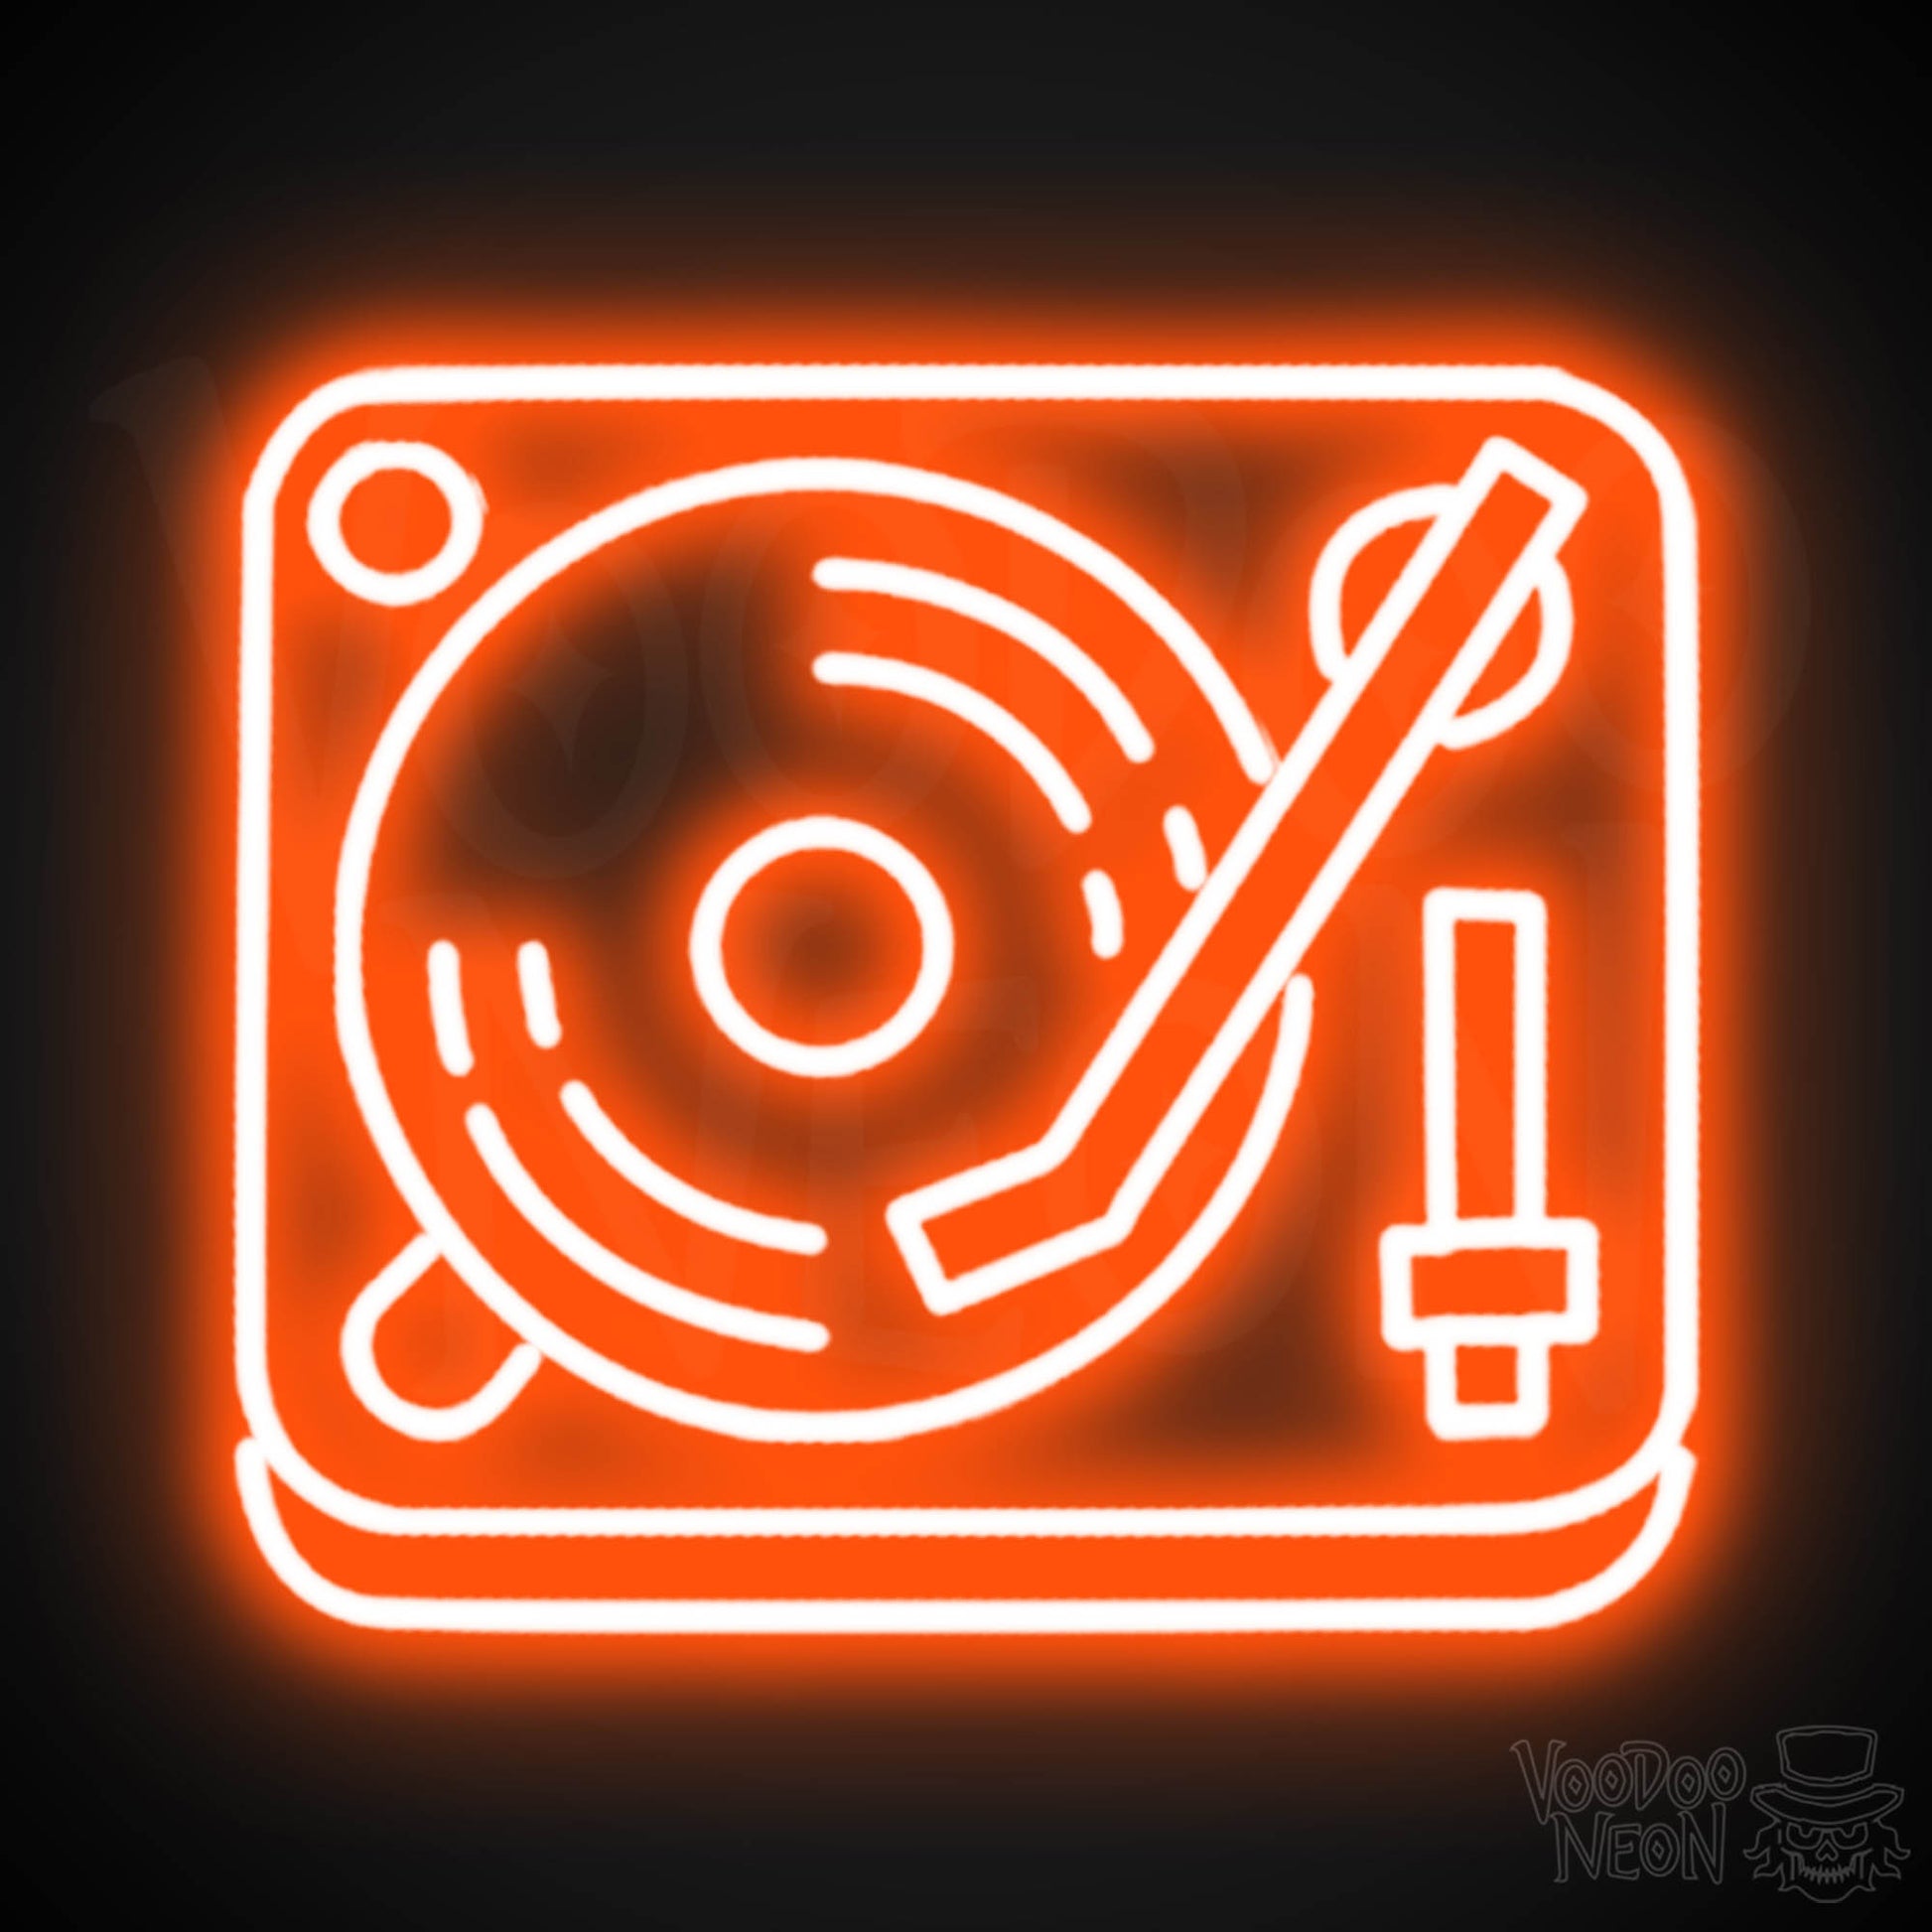 Retro Record Player Neon Sign - Record Player Neon Wall Art - Color Orange